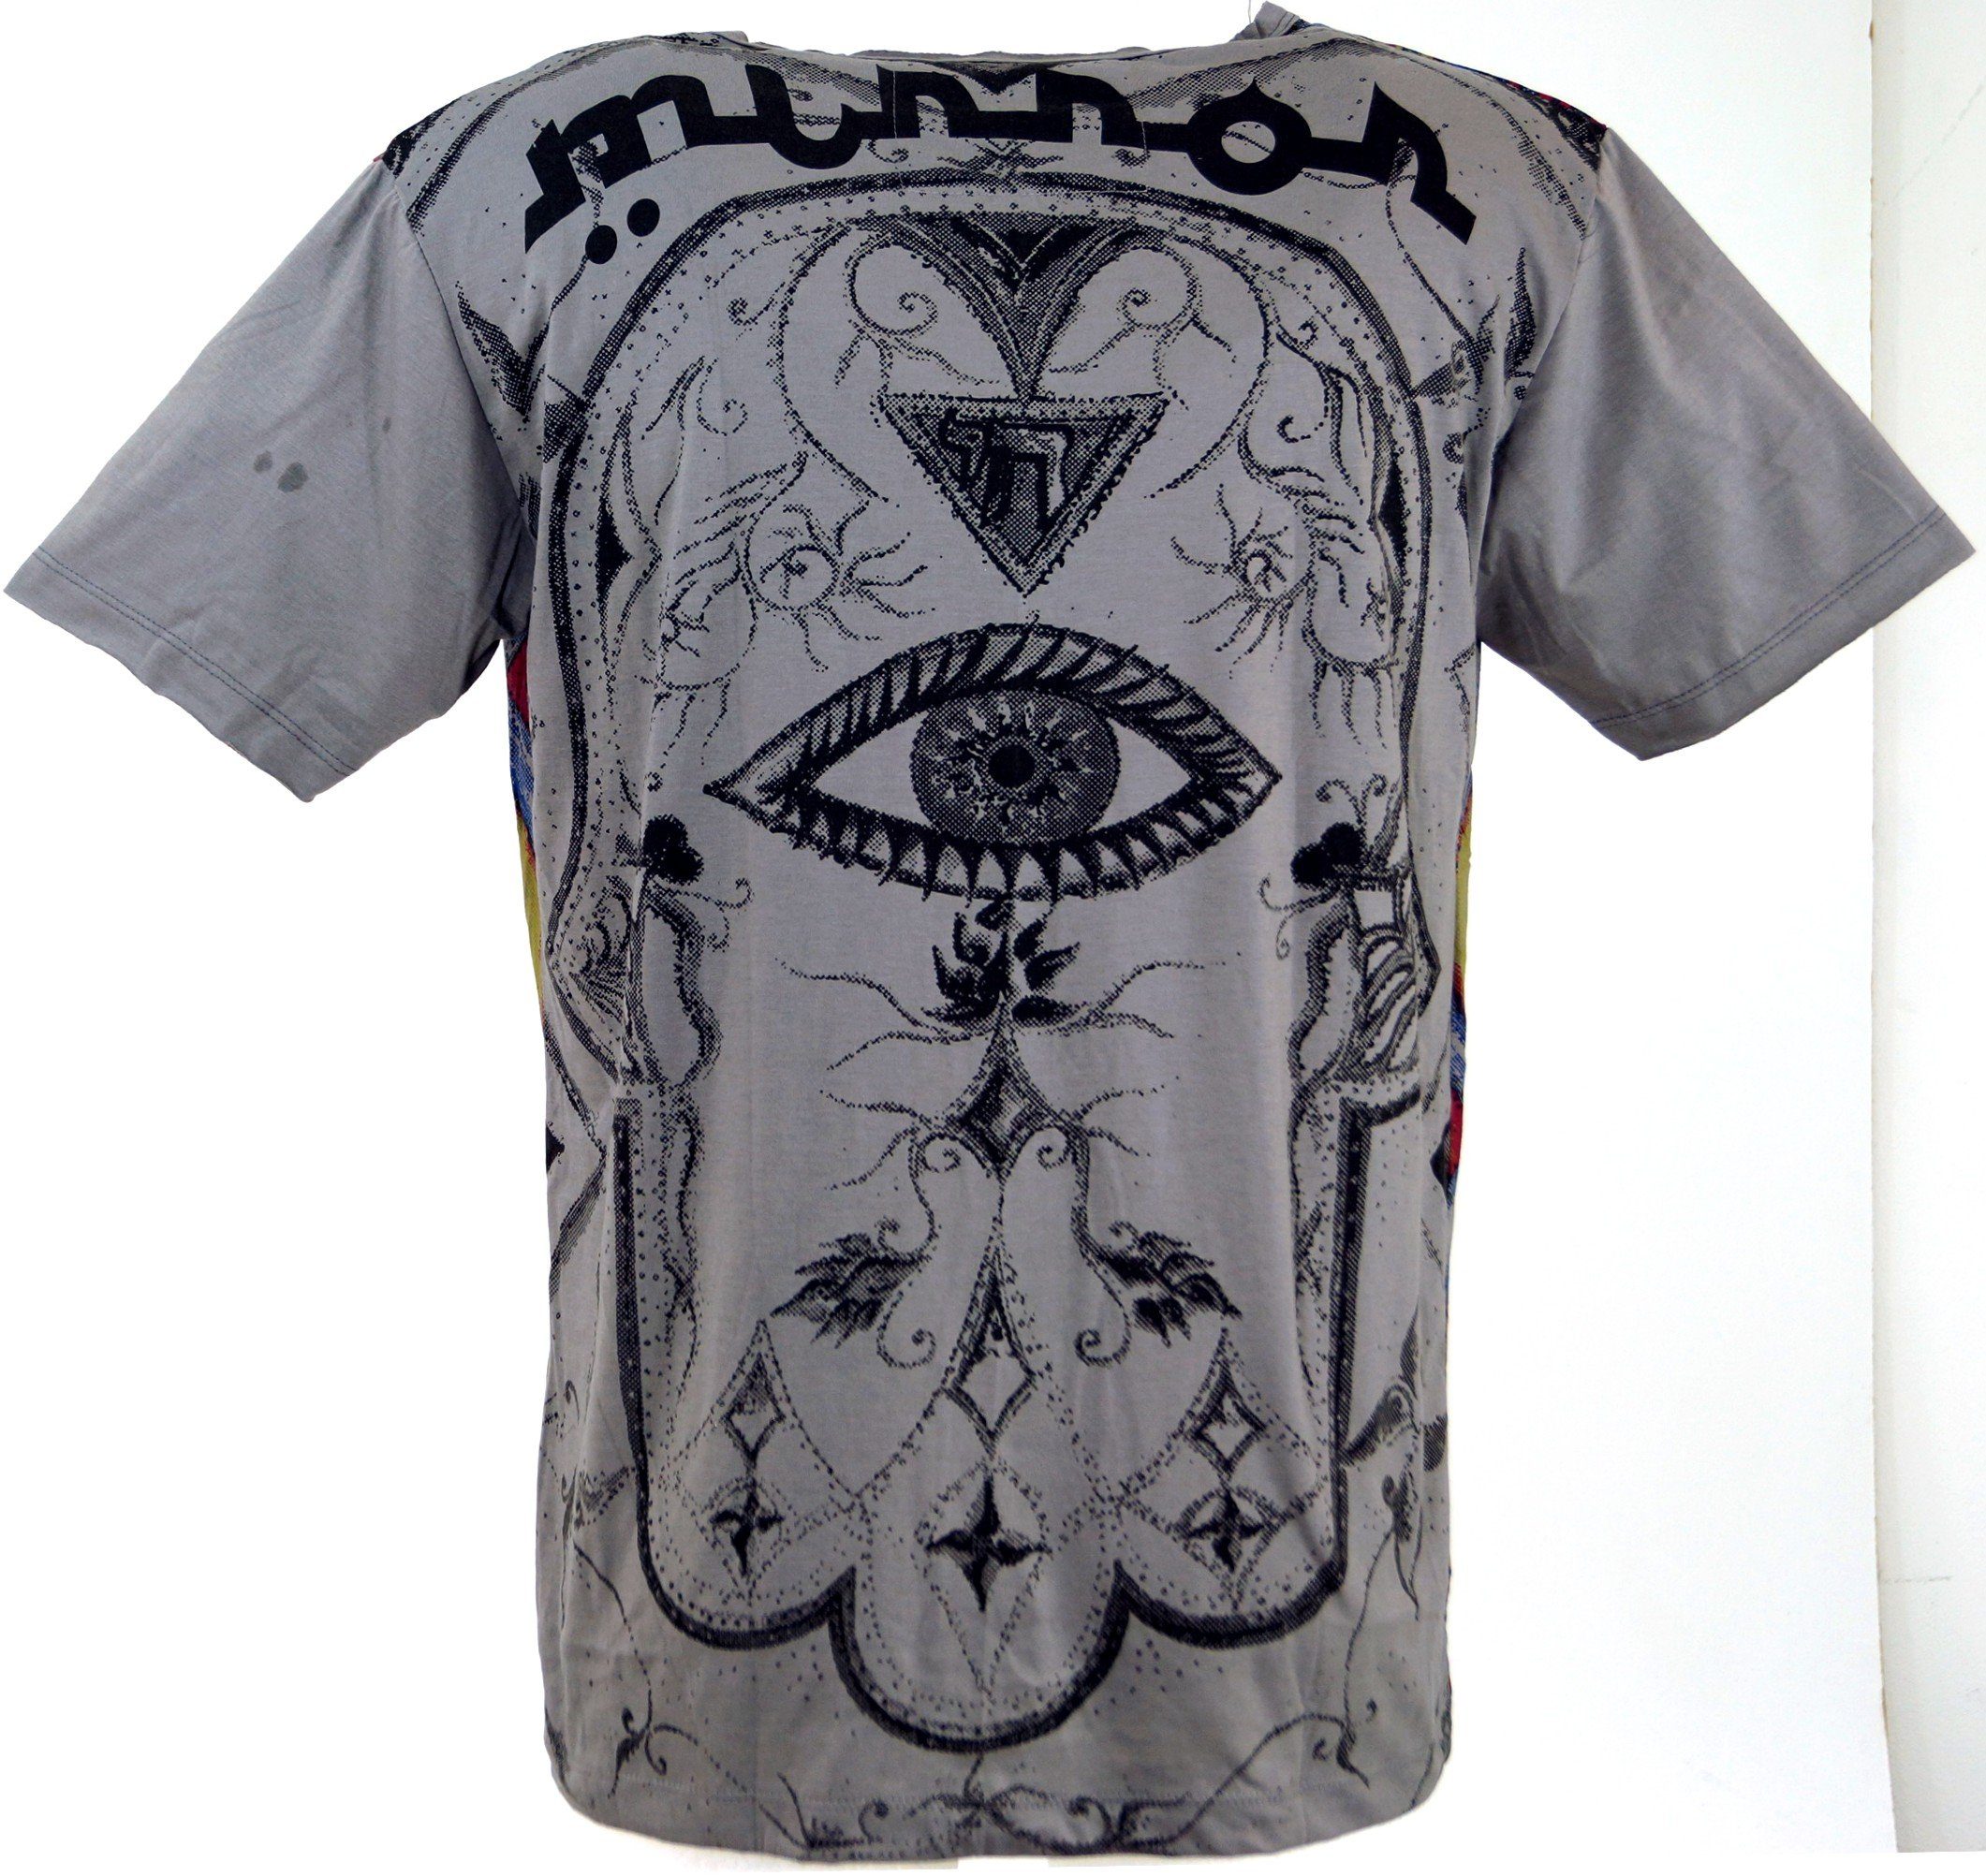 Guru-Shop T-Shirt Mirror T-Shirt - Style, Drittes grau alternative Festival, Auge Auge / grau Goa Drittes Bekleidung